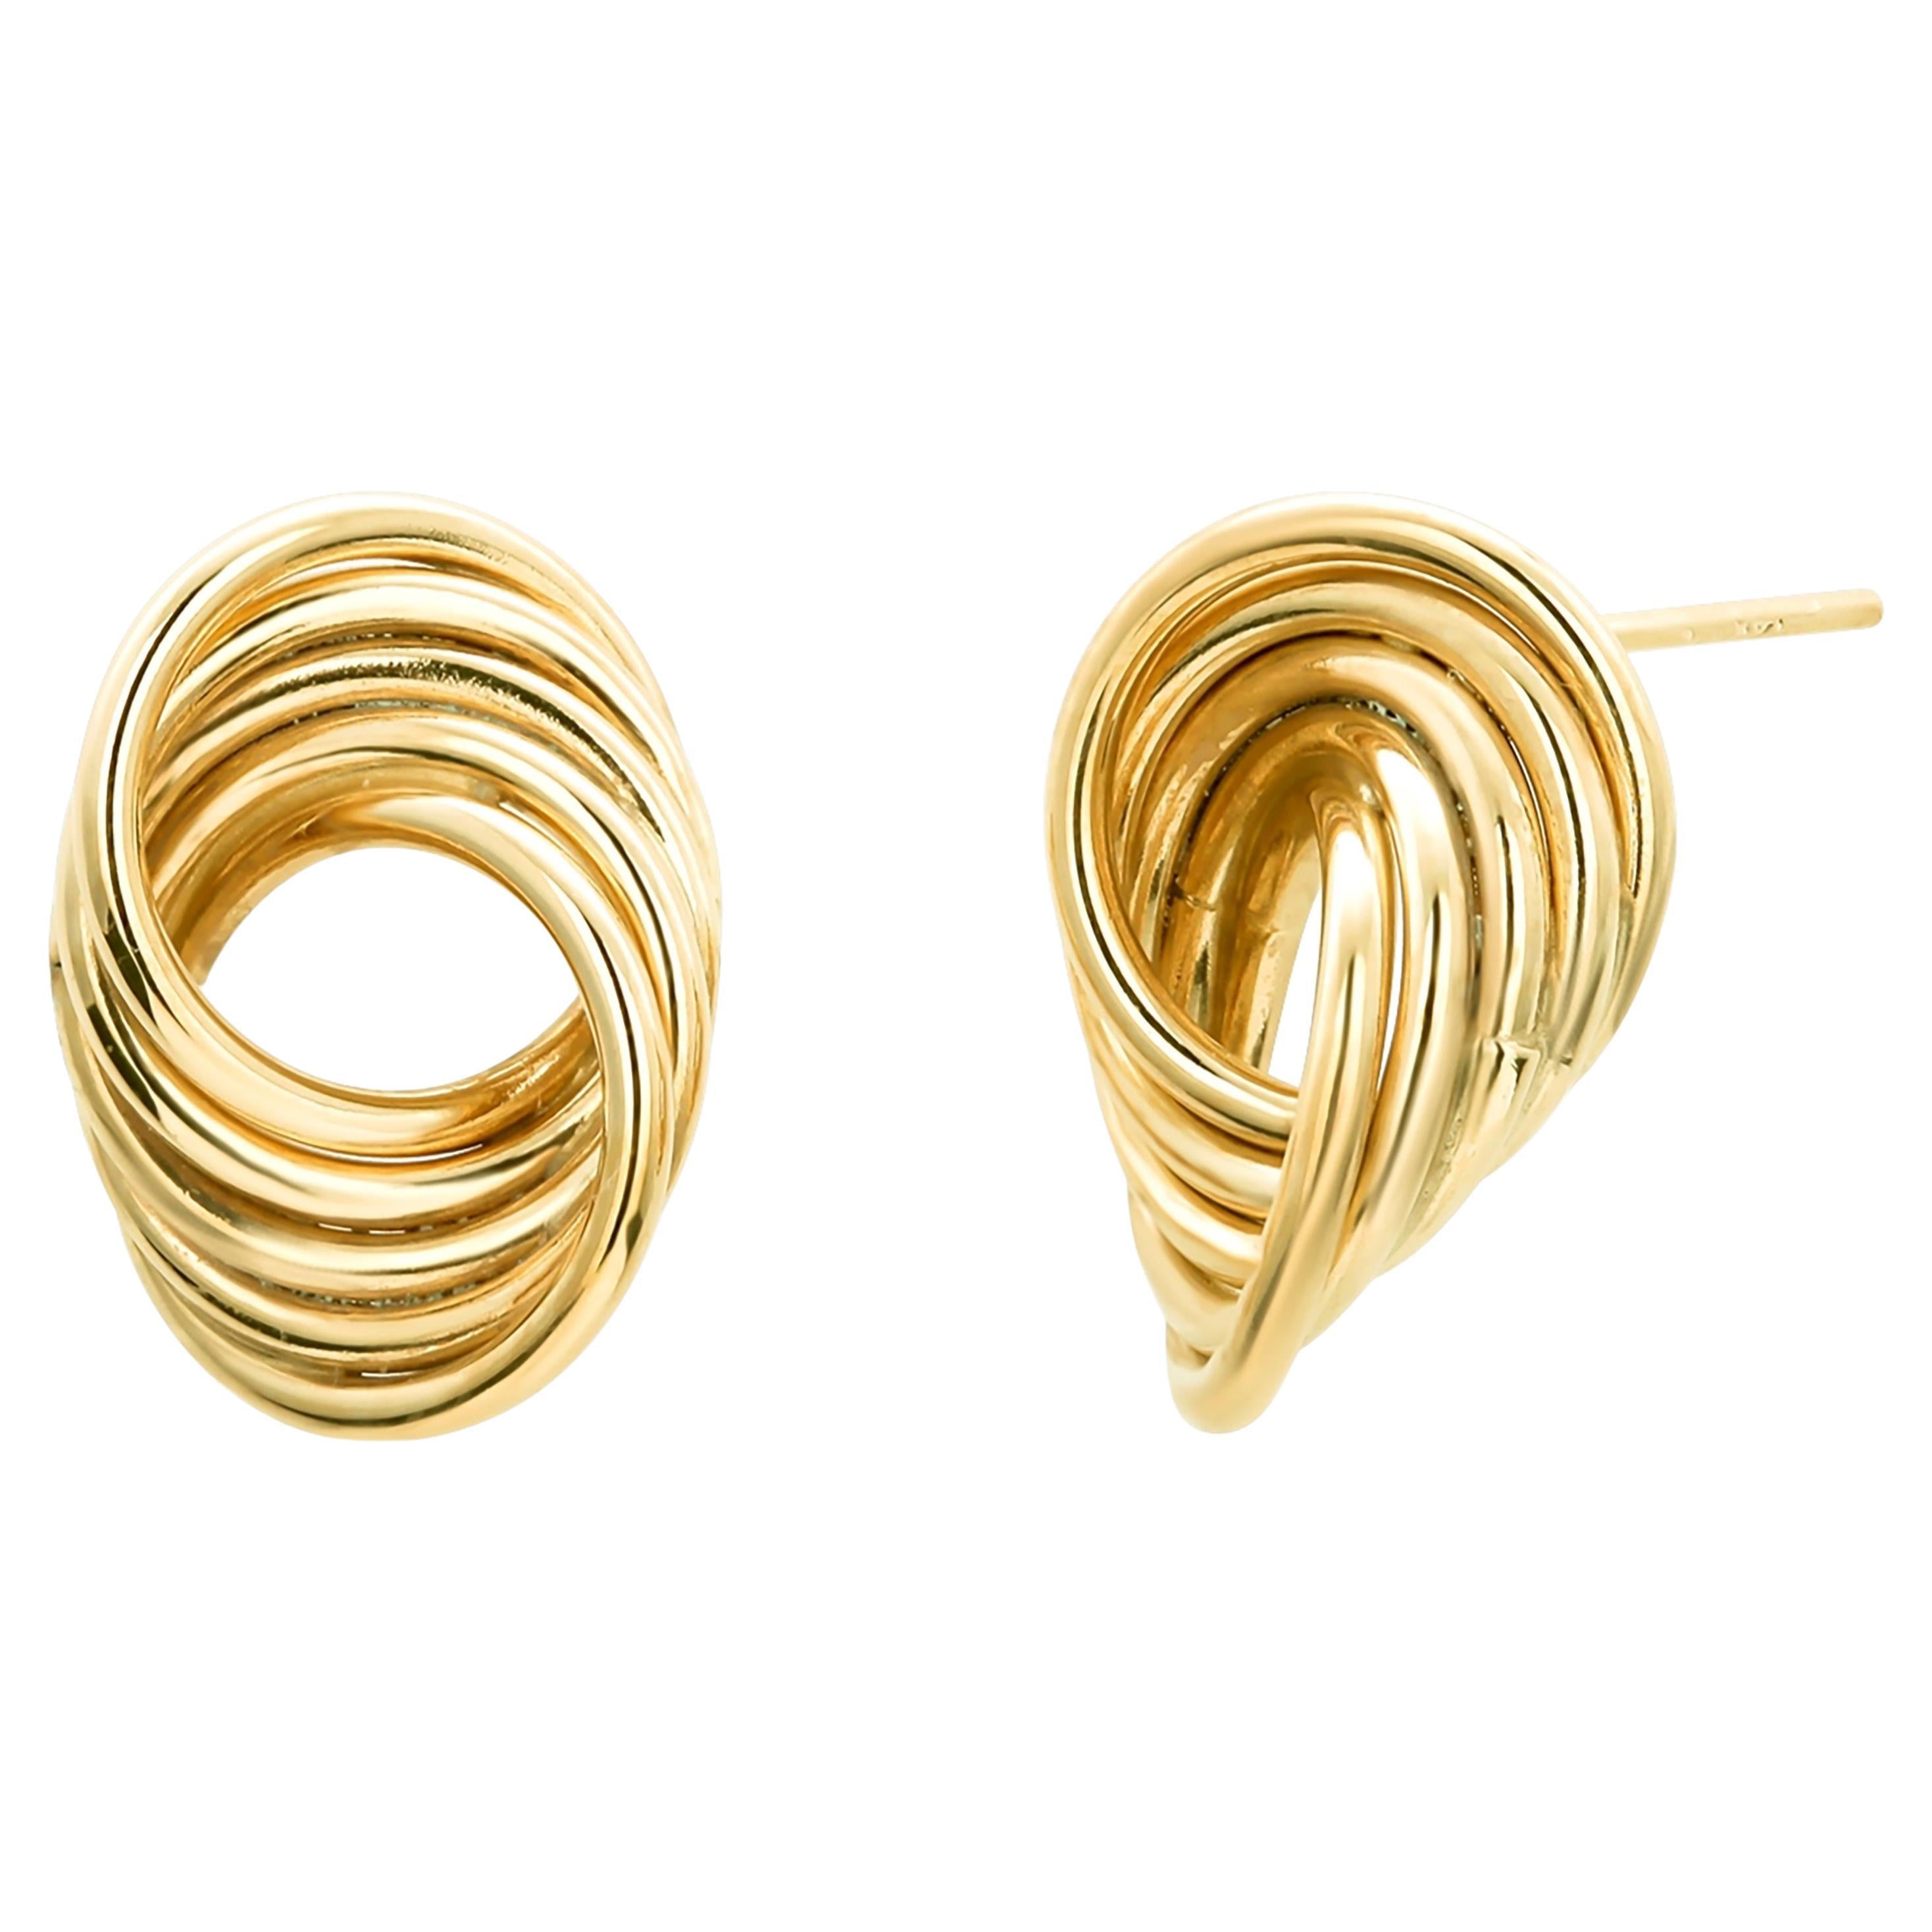 Fourteen Karat Yellow Gold Swirl Shaped Stud Earrings